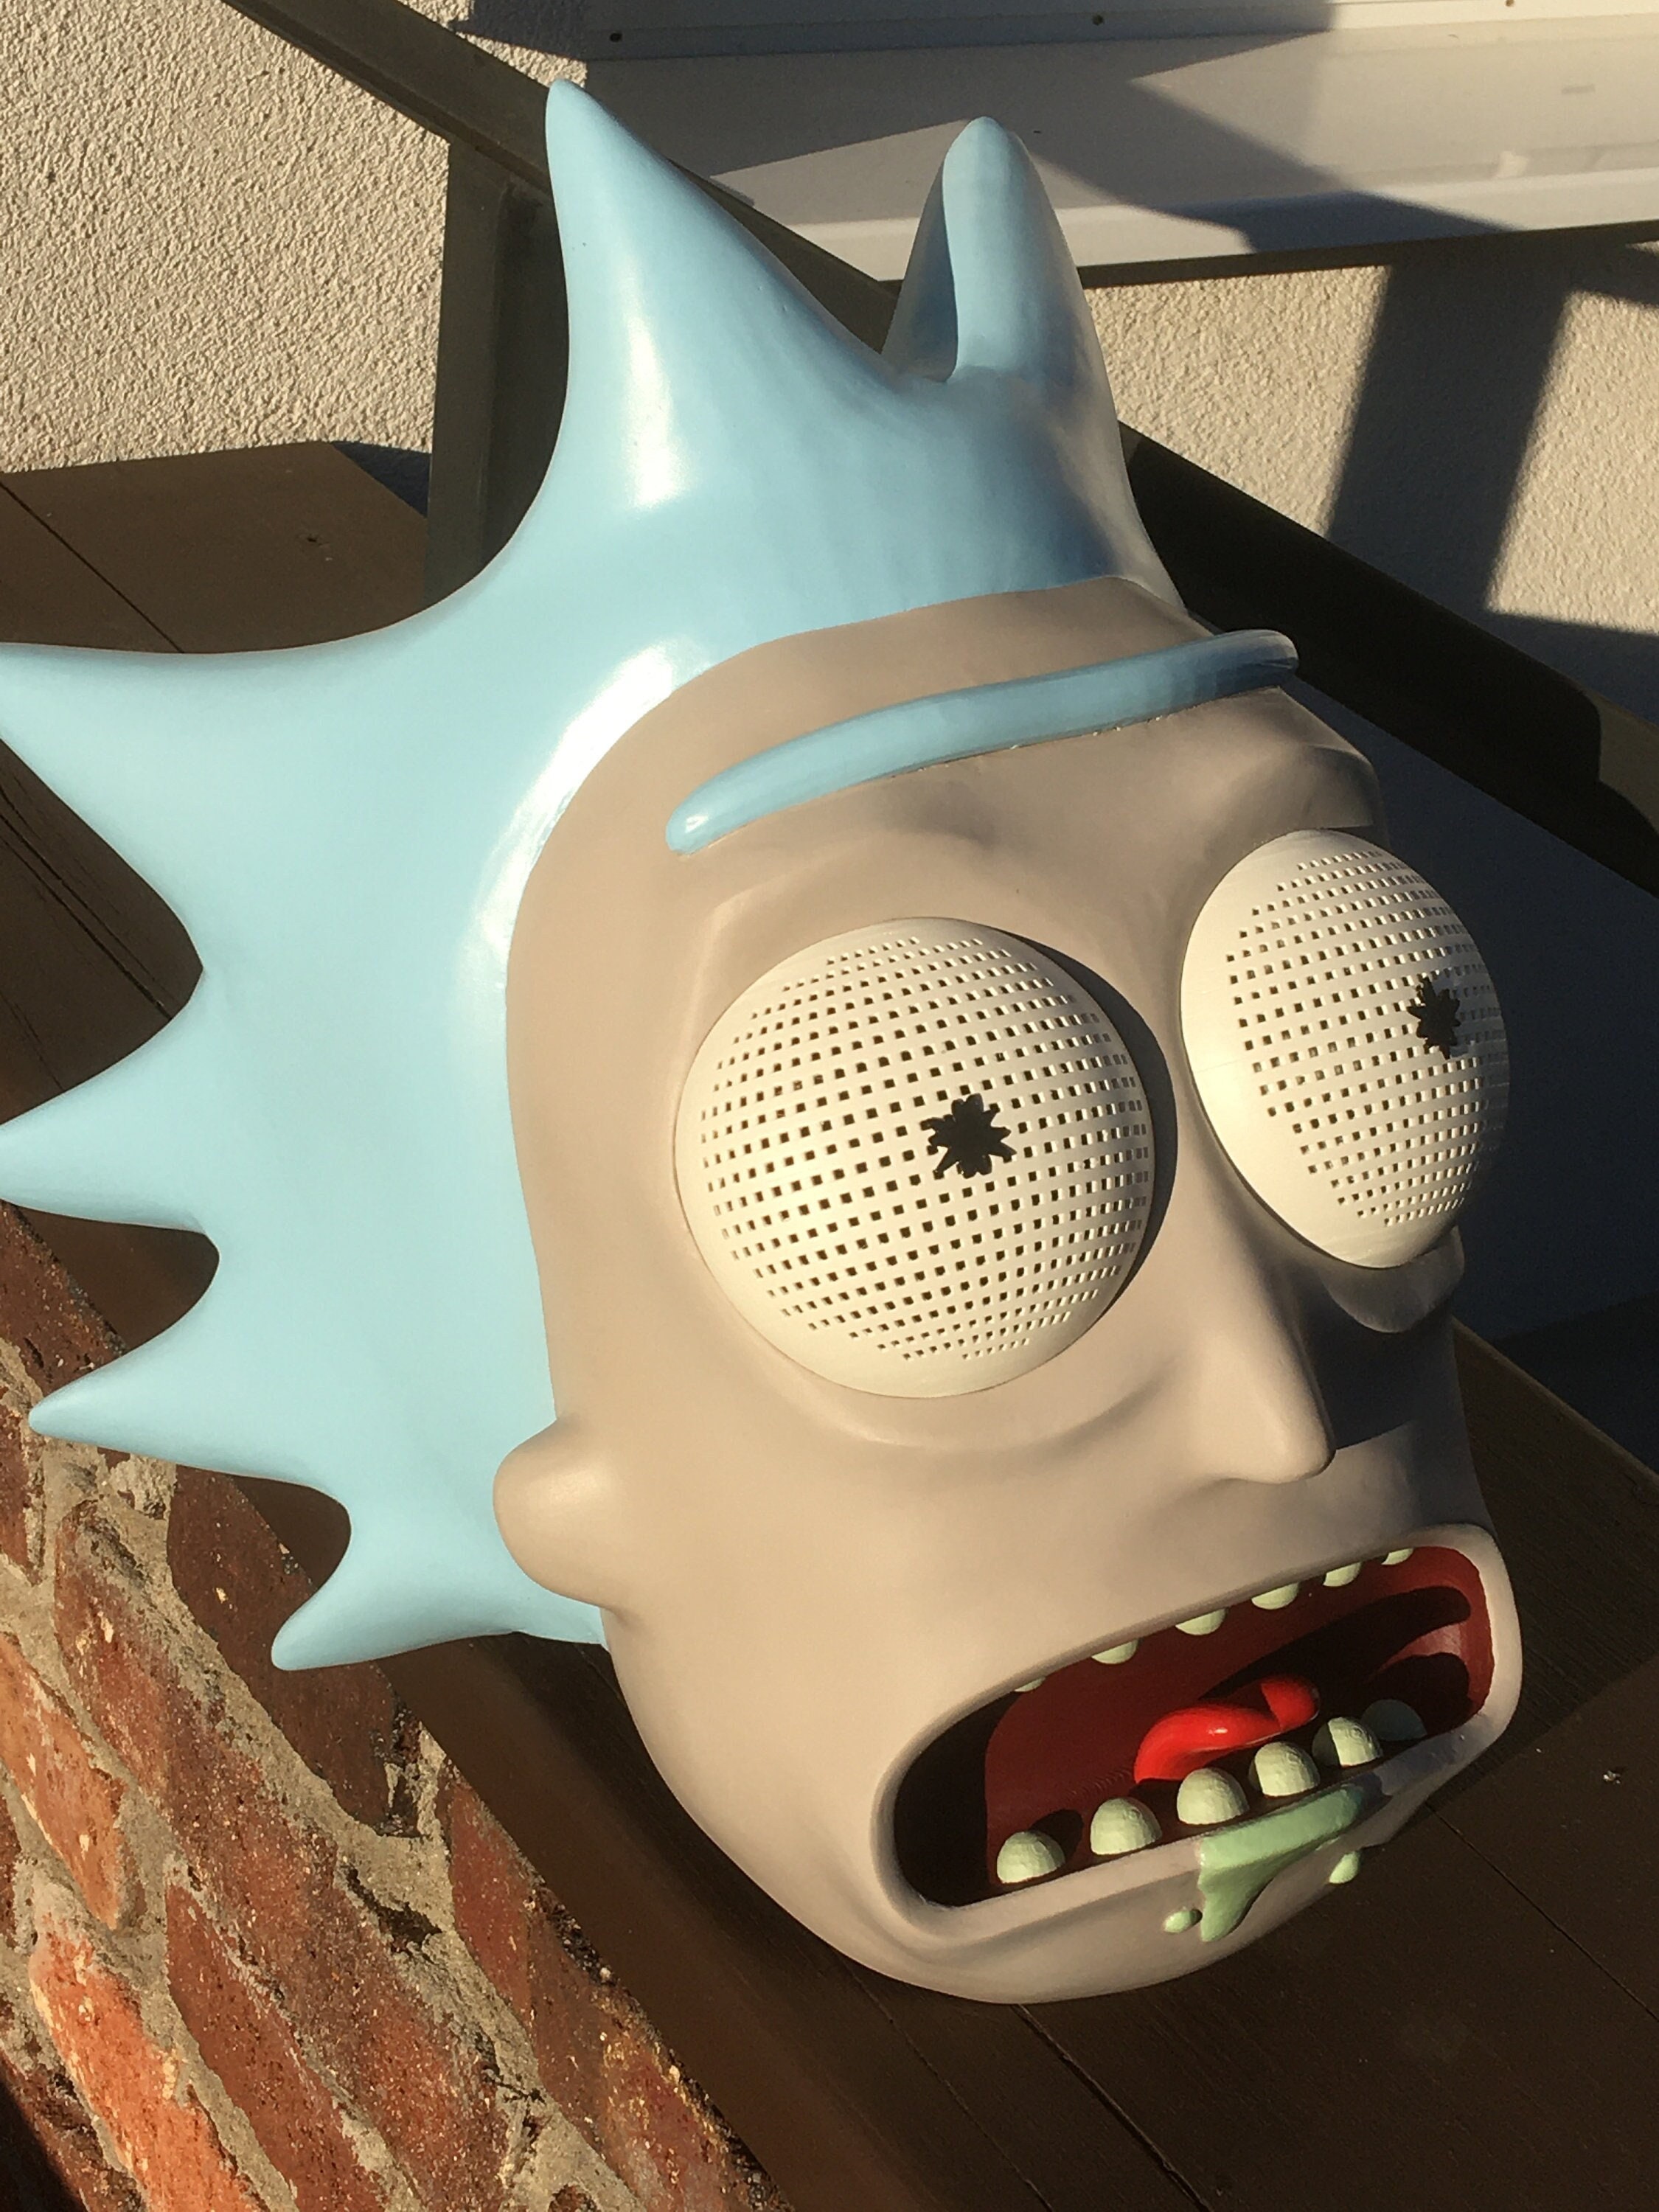 Rick Morty Mask - Etsy